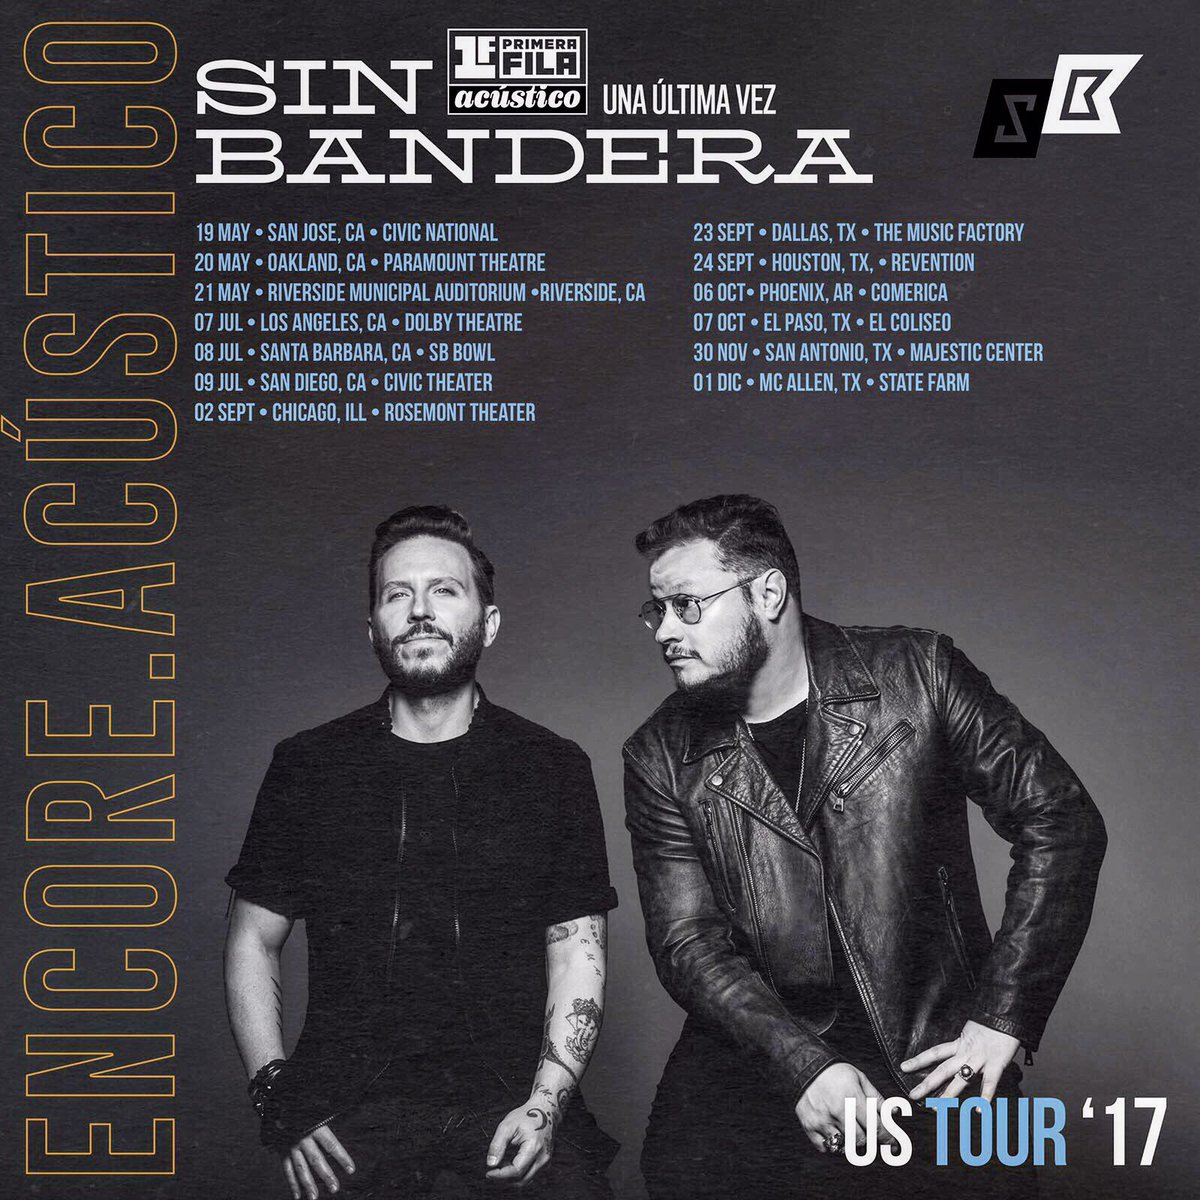 Concierto de Sin Bandera, Una Última Vez Tour, en Chicago, IL, Estados Unidos, Sábado, 02 de septiembre de 2017